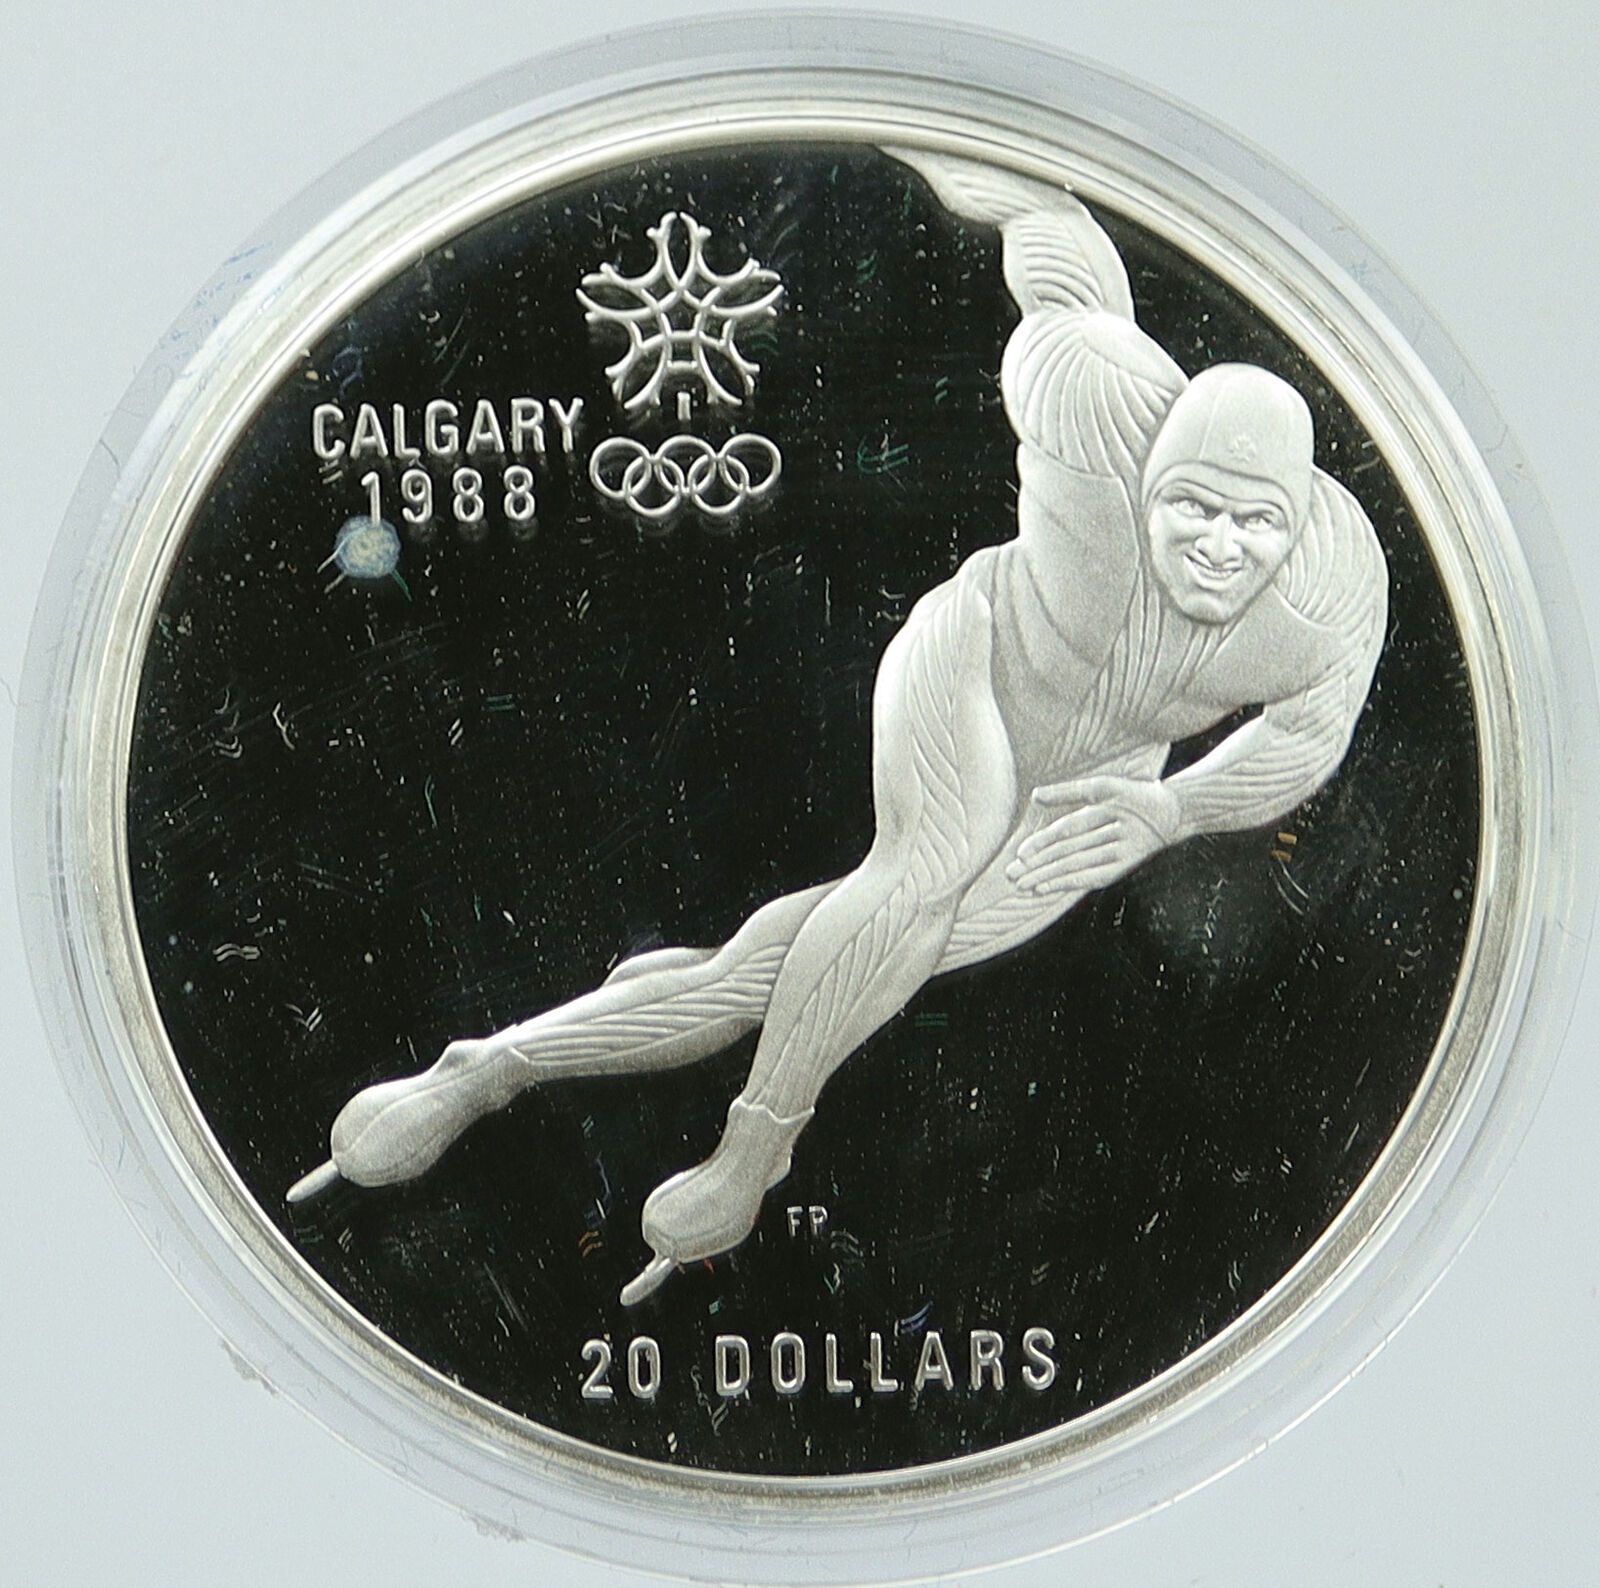 1985 CANADA 1988 CALGARY OLYMPICS Speed Skating Proof Silver $20 Coin i117463